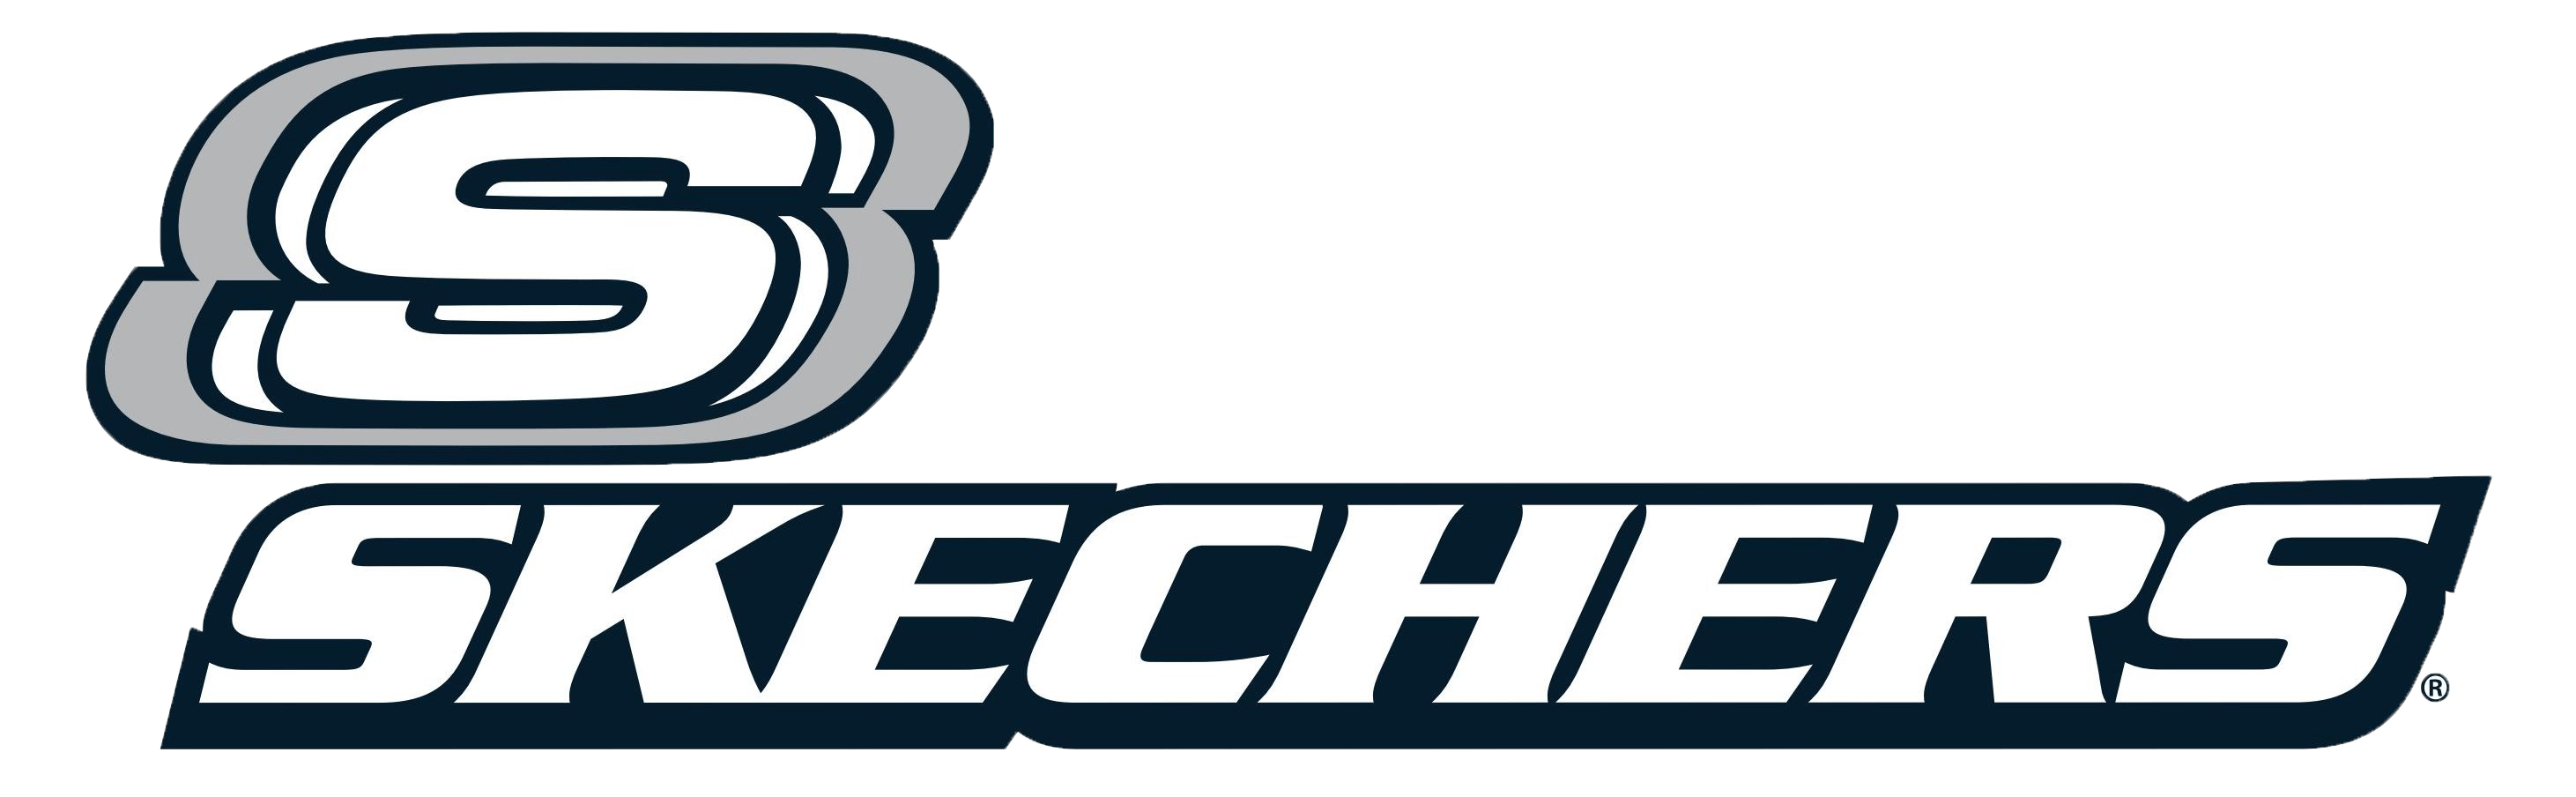 Scechers Logo - LogoDix